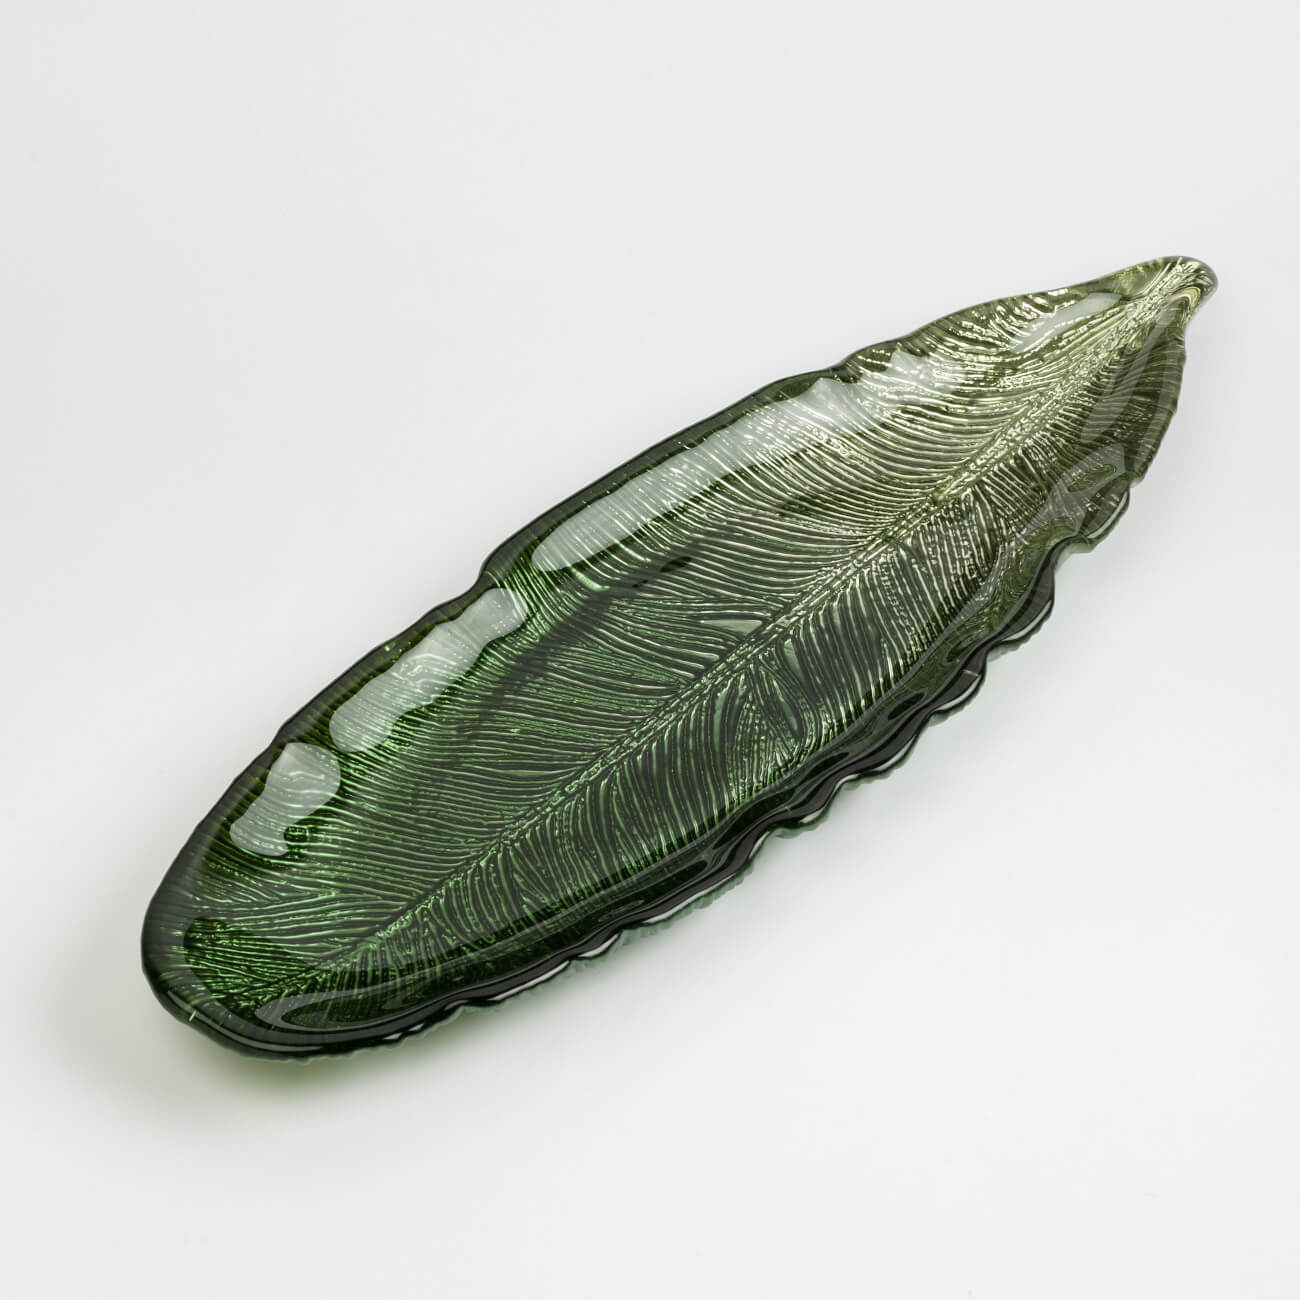 Блюдо, 40х13 см, стекло, зелено-золотистое, Лист стрелиции, Royal jungle блюдо керамическое сервировочное лист 30×10 см зелёный